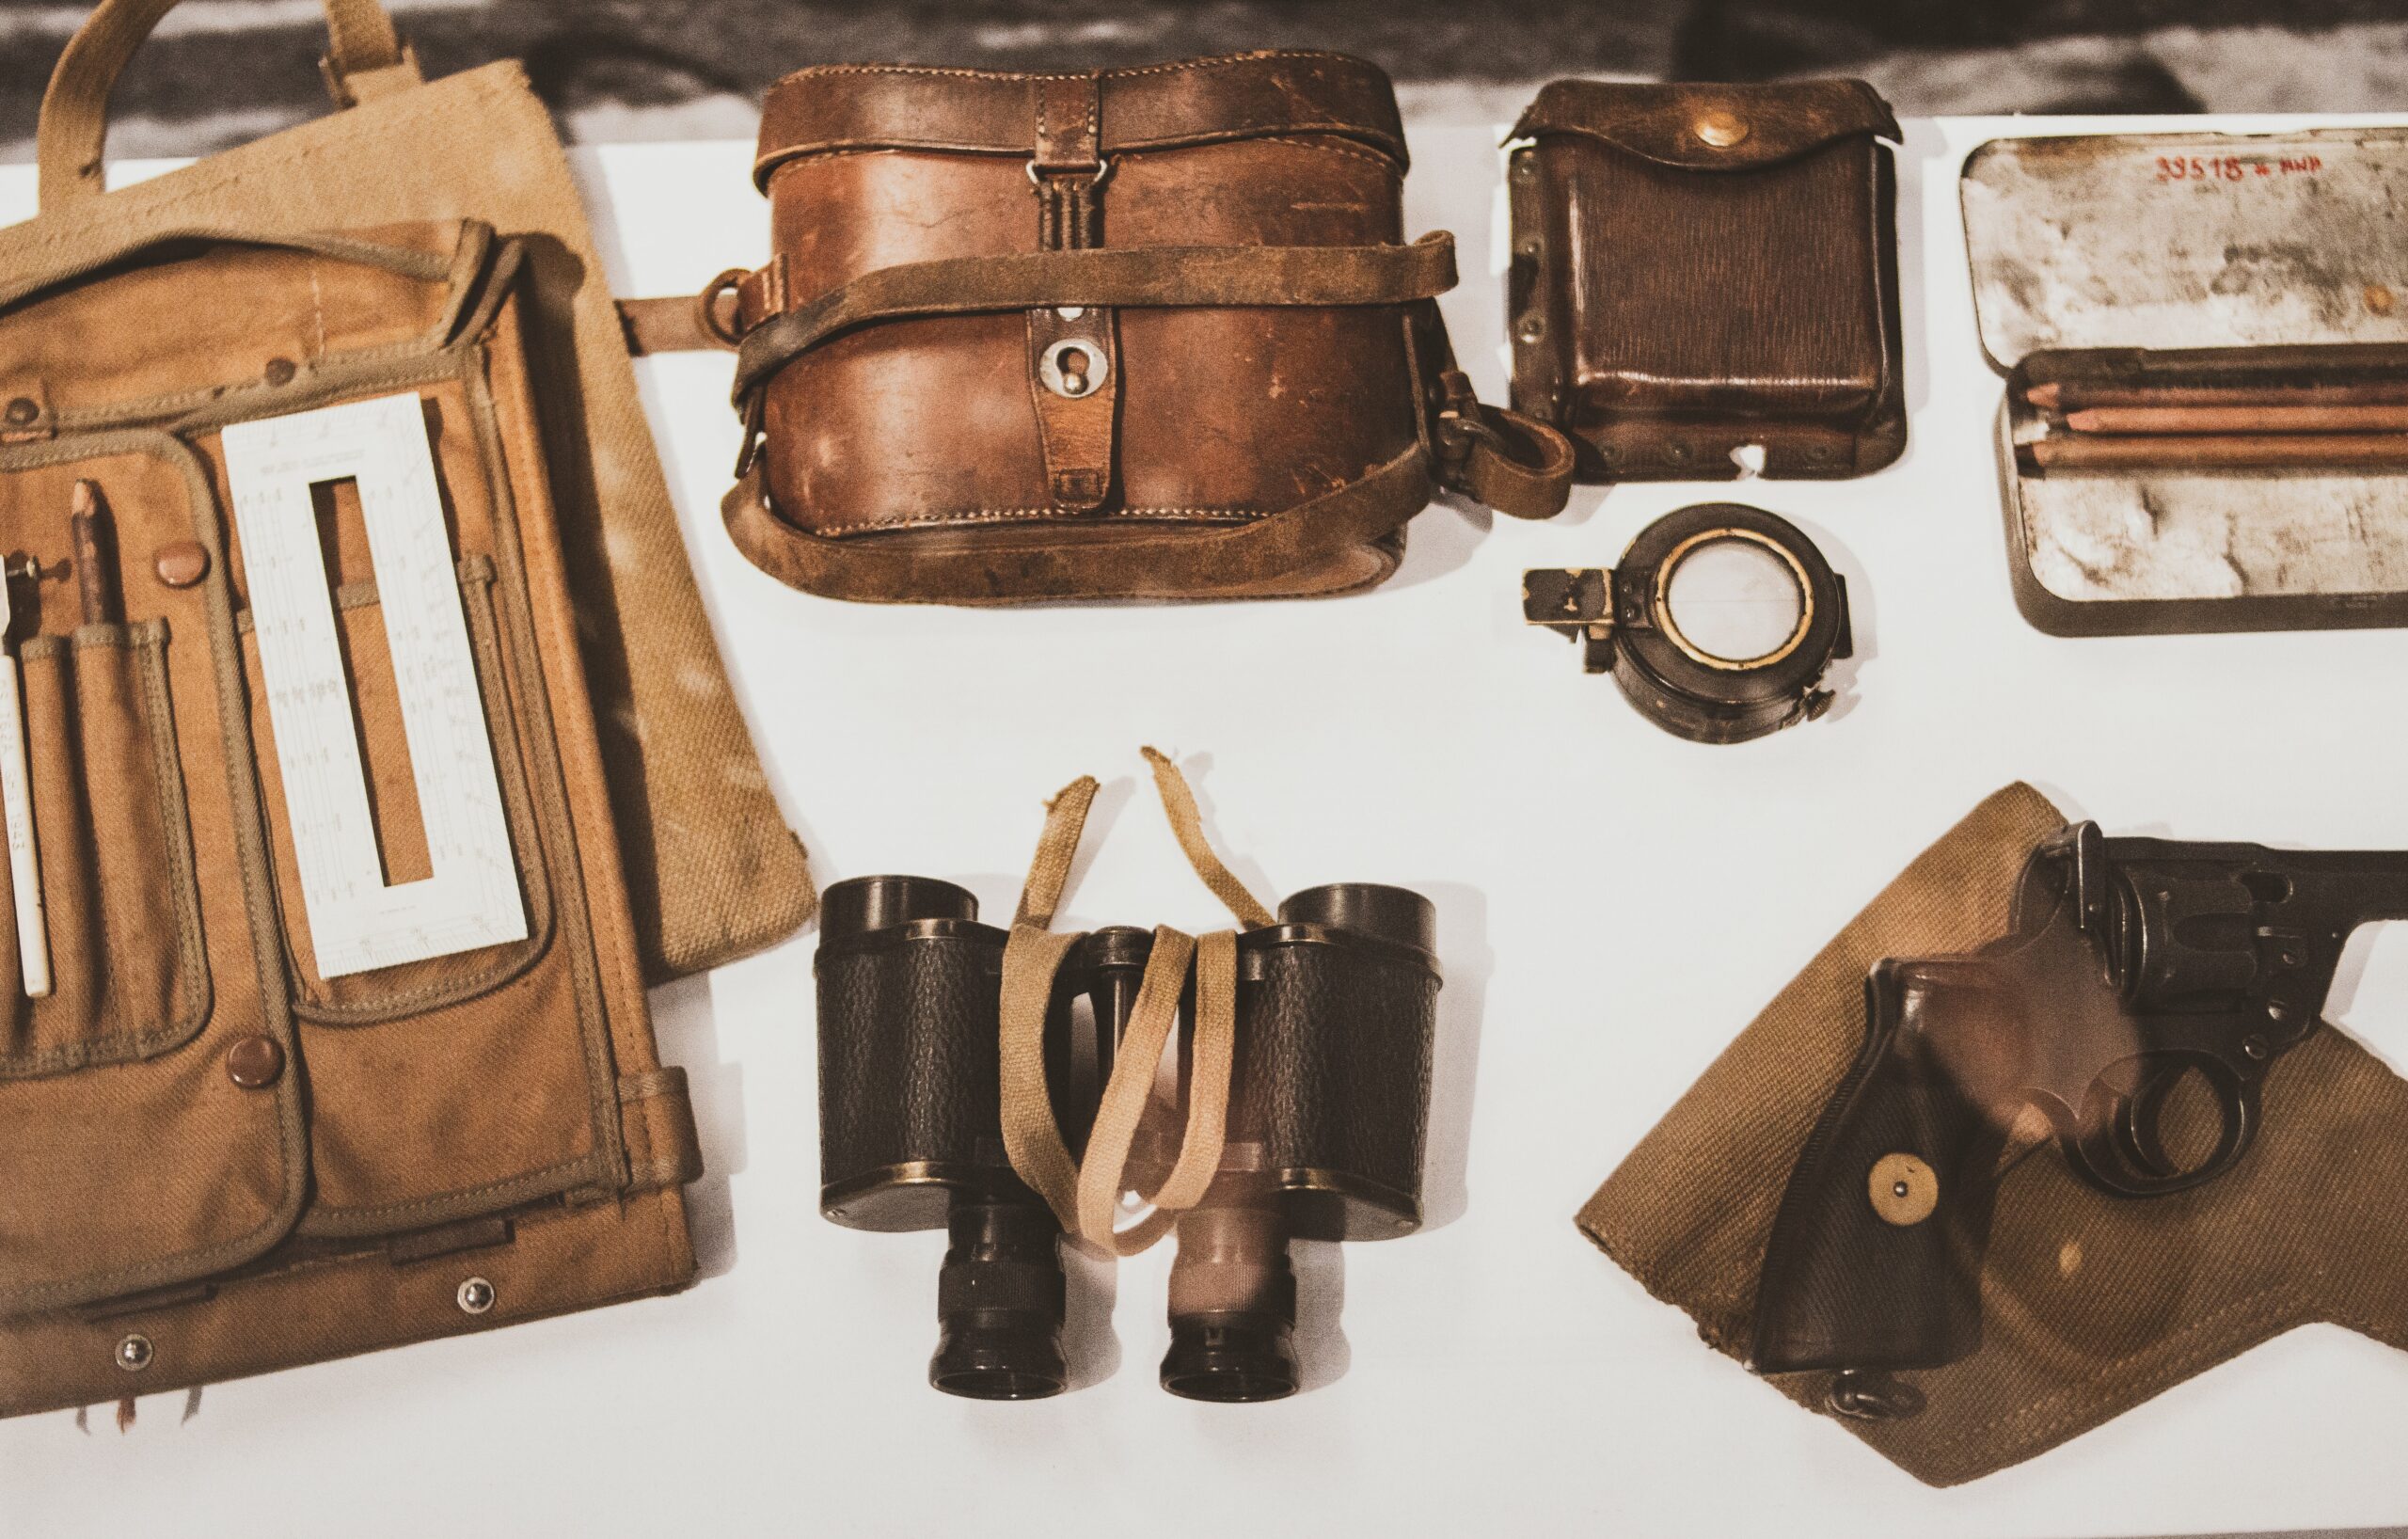 A brief history of handbags